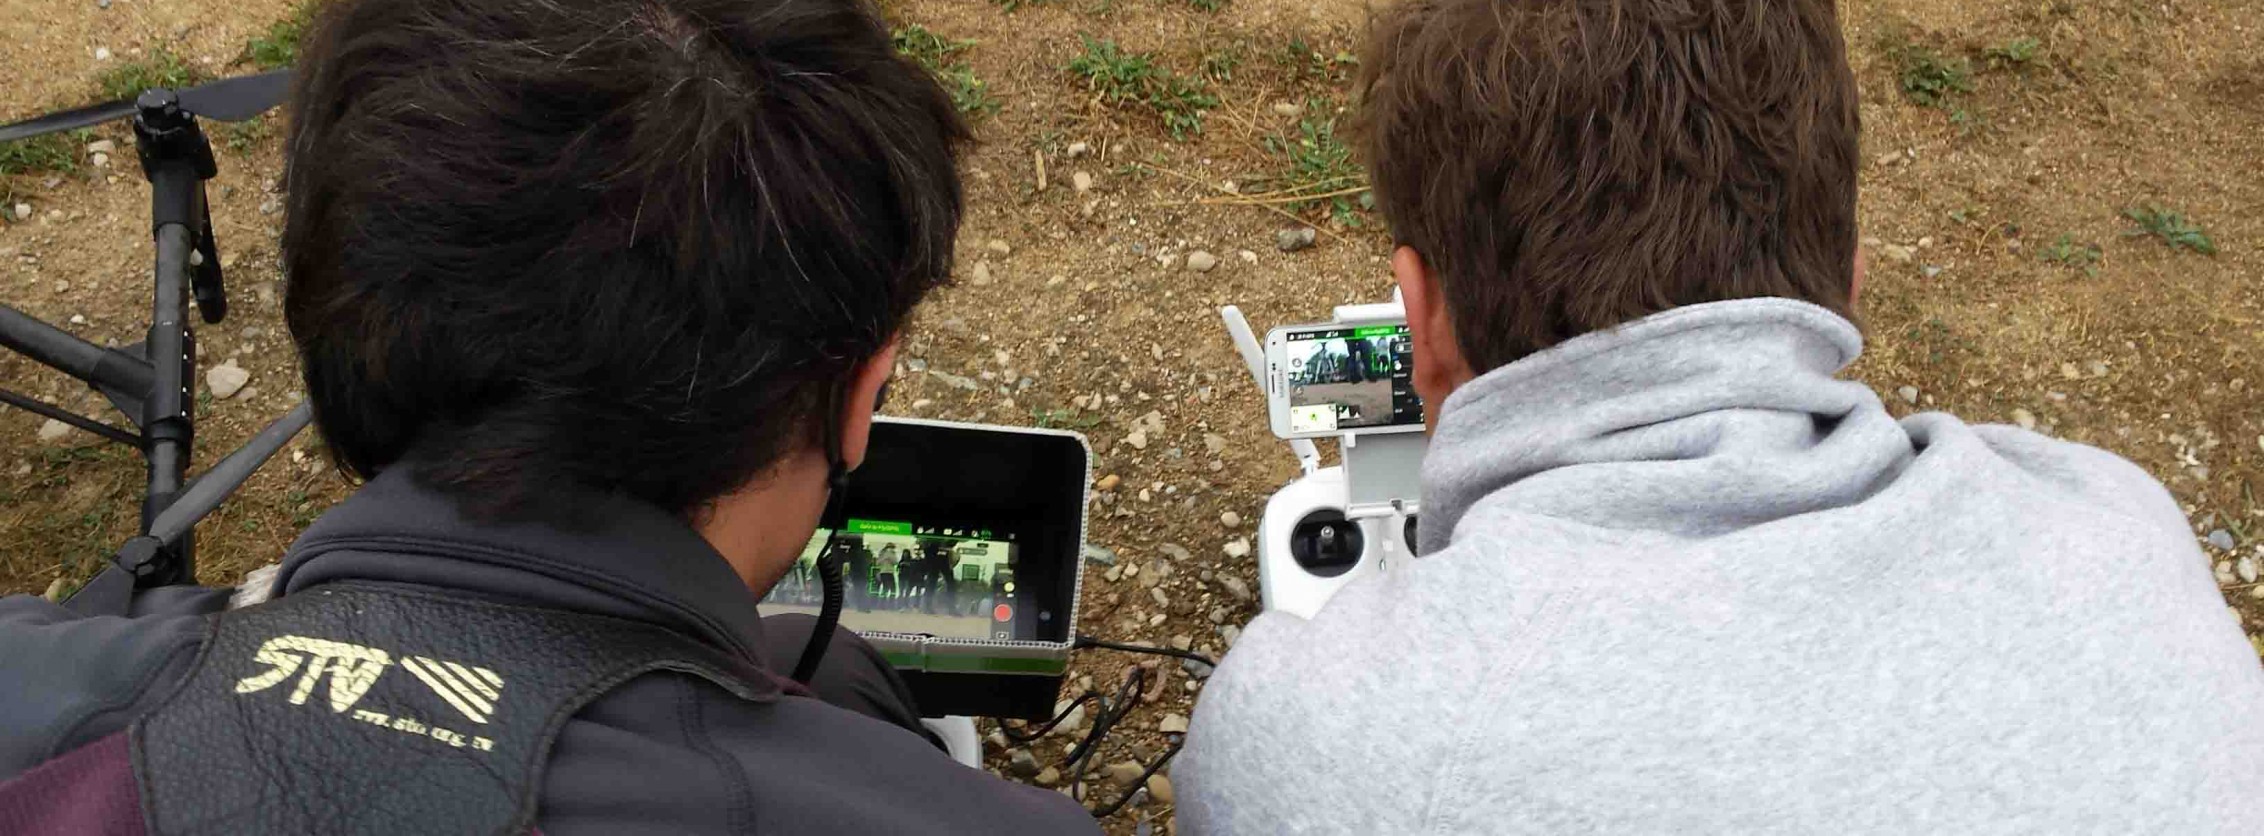 Télépilotes drone avec retour vidéo sur radiocommande